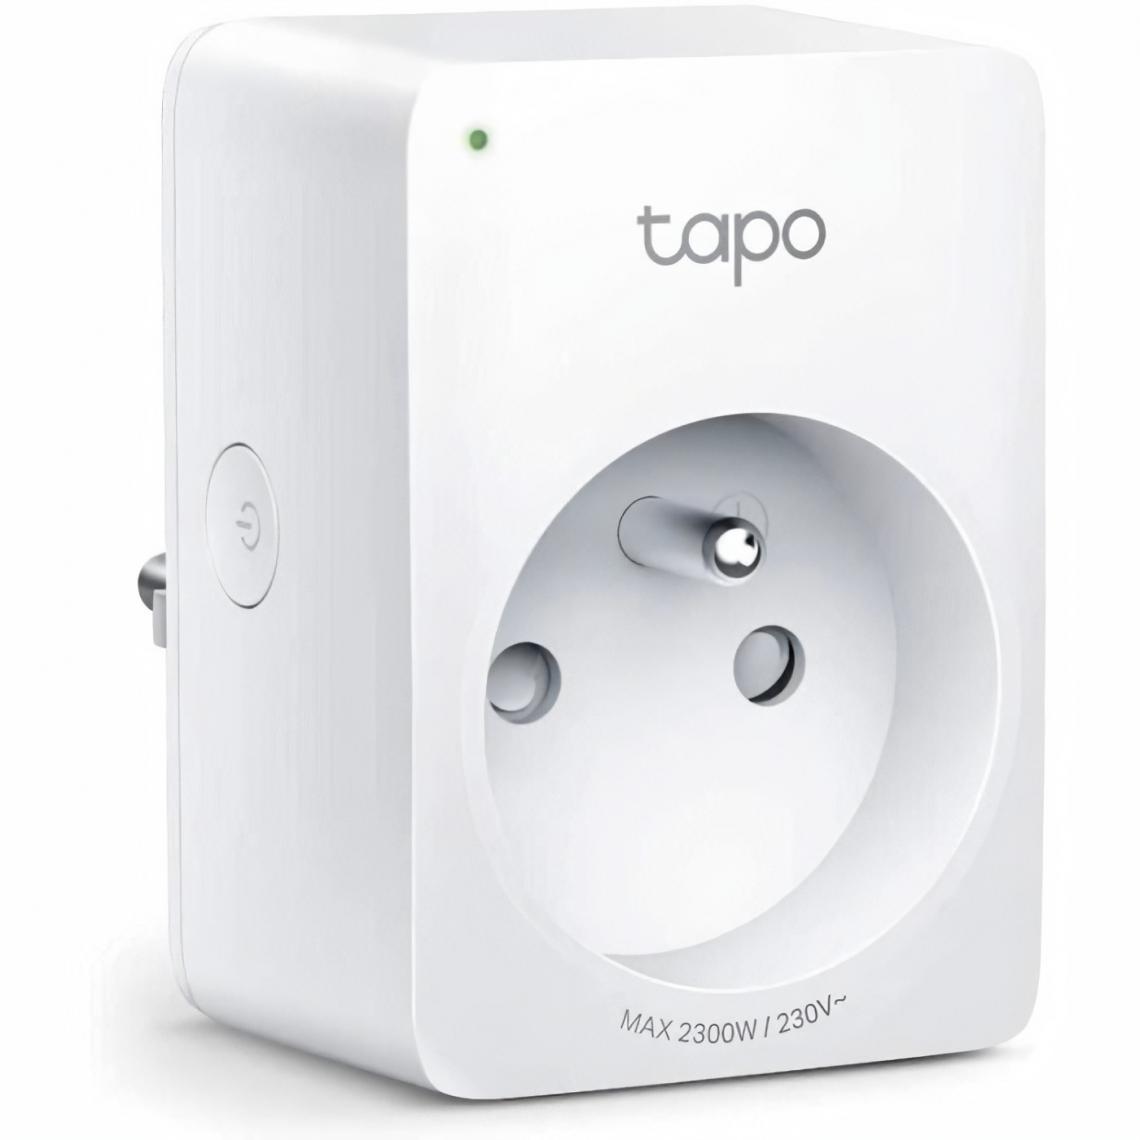 Tplink - TAPO P100 (1-pack) Prise connectée WIFI Tapo 100F - Fiches électriques